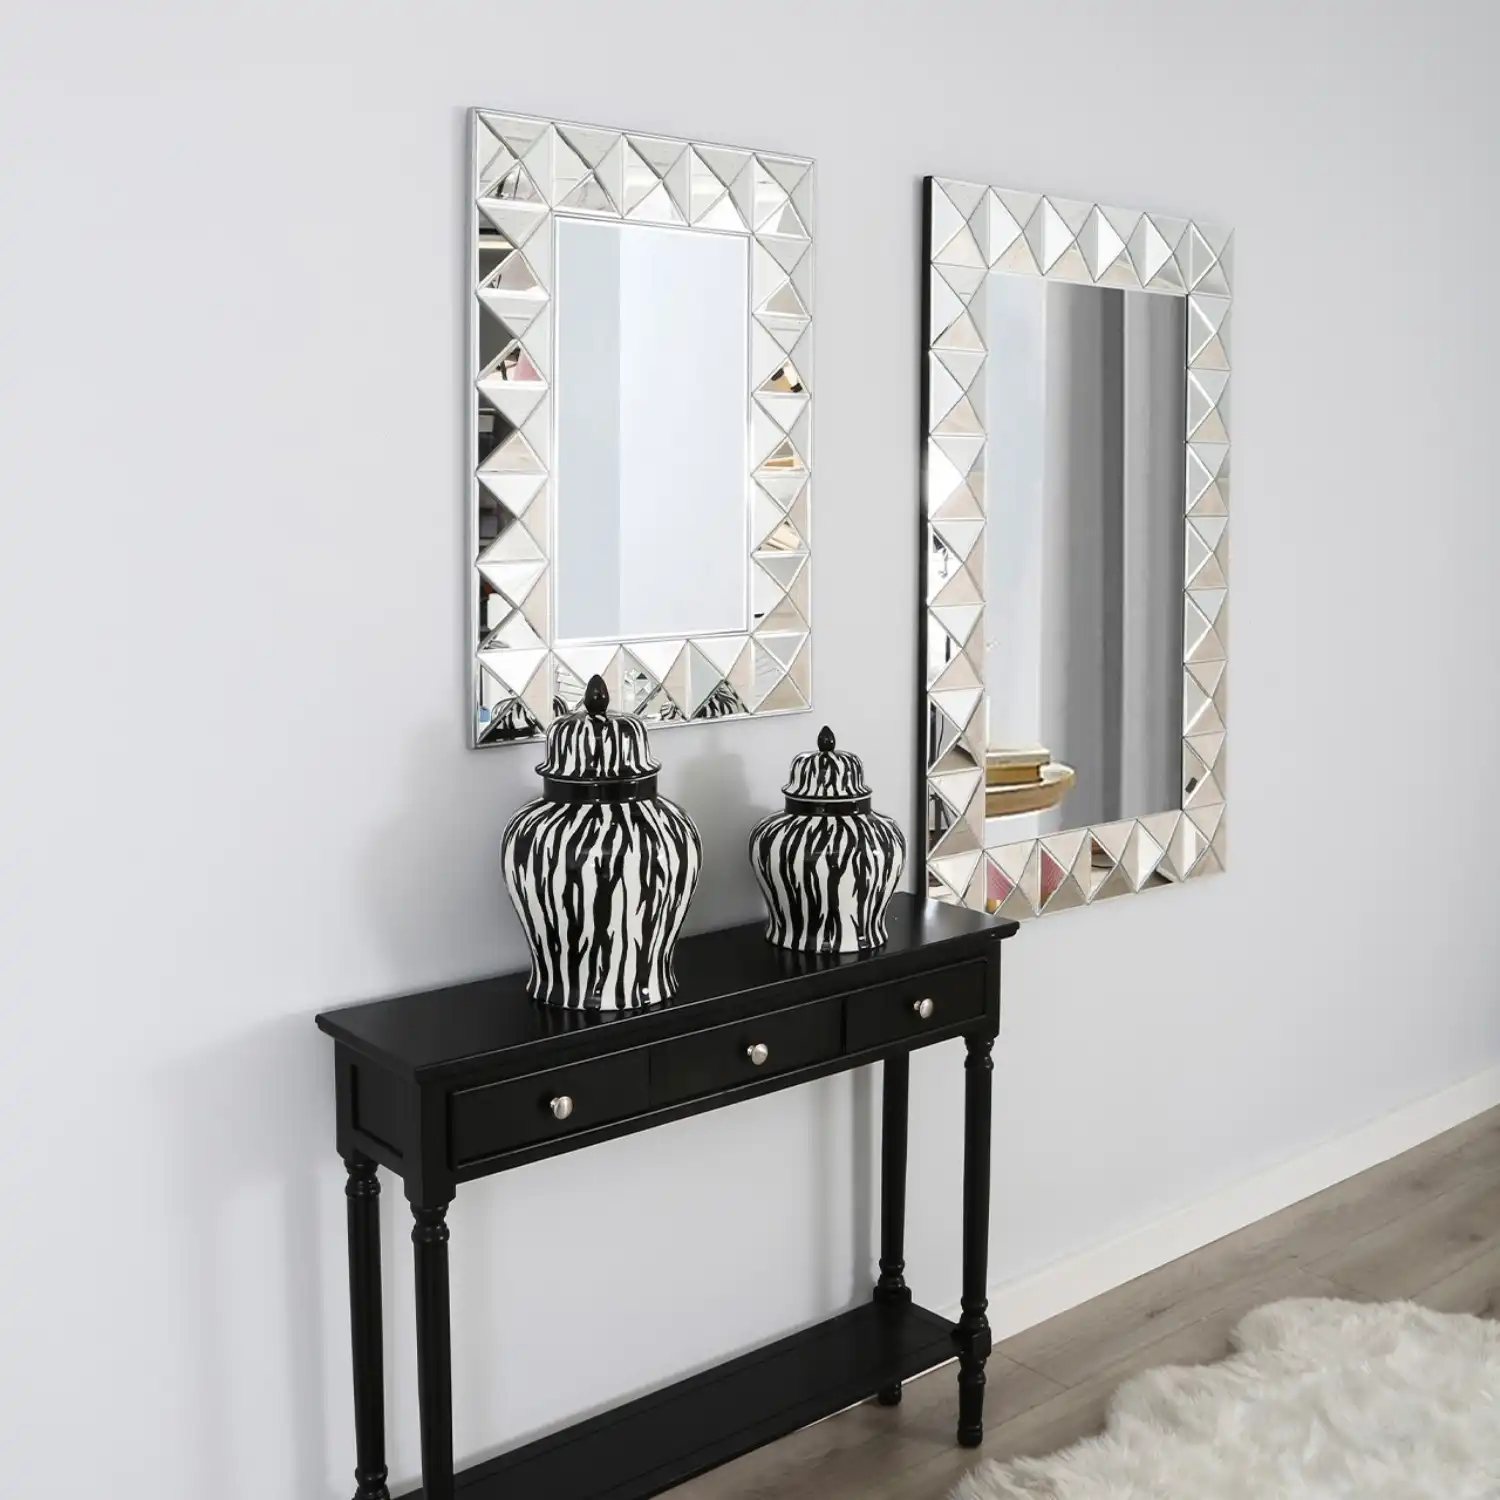 3d Frame Wall Mirror